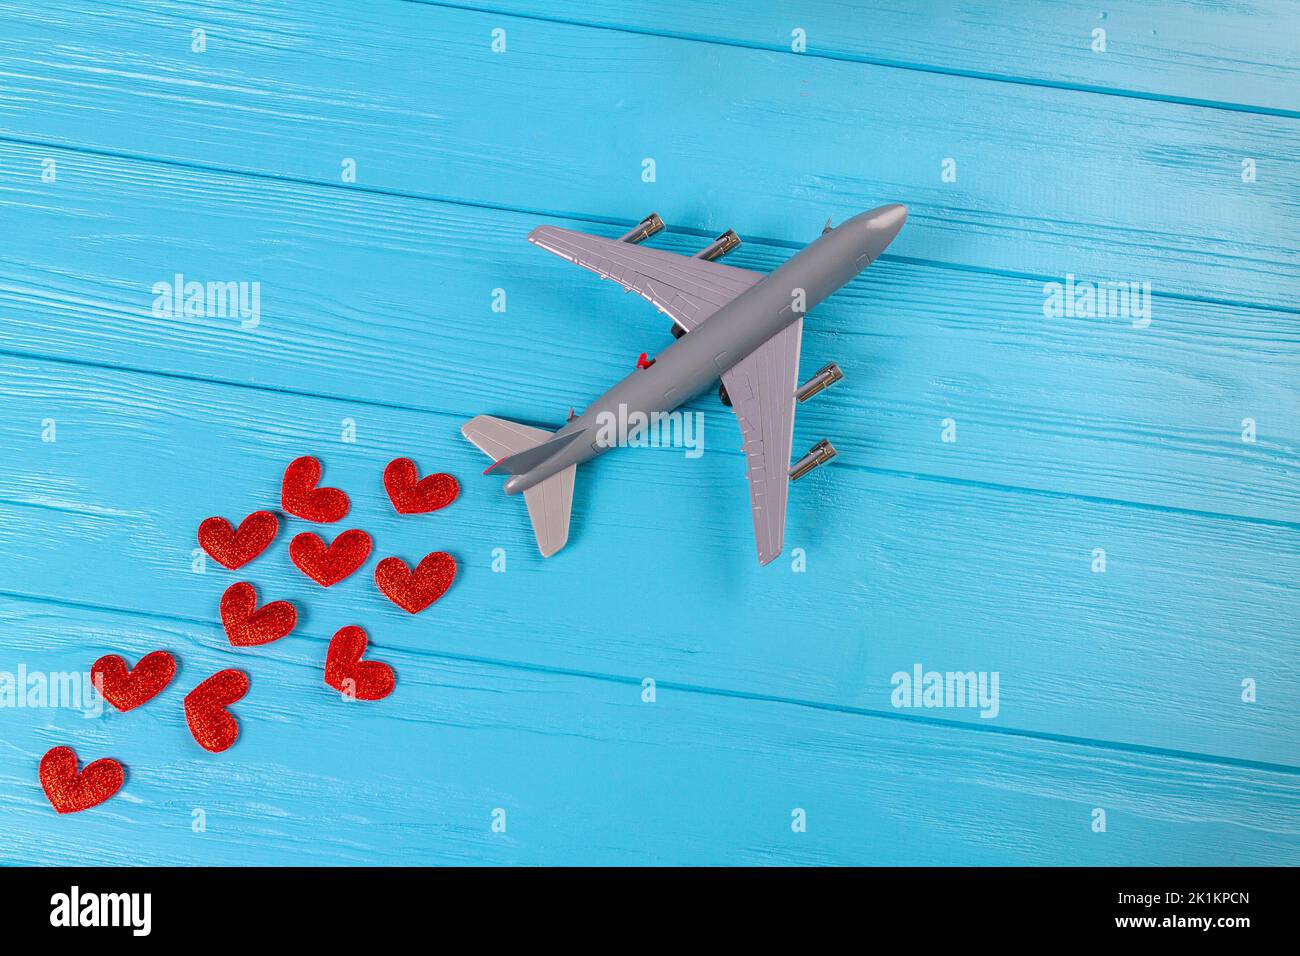 Juguete de avión de pasajeros fotografías e imágenes de alta resolución -  Página 3 - Alamy